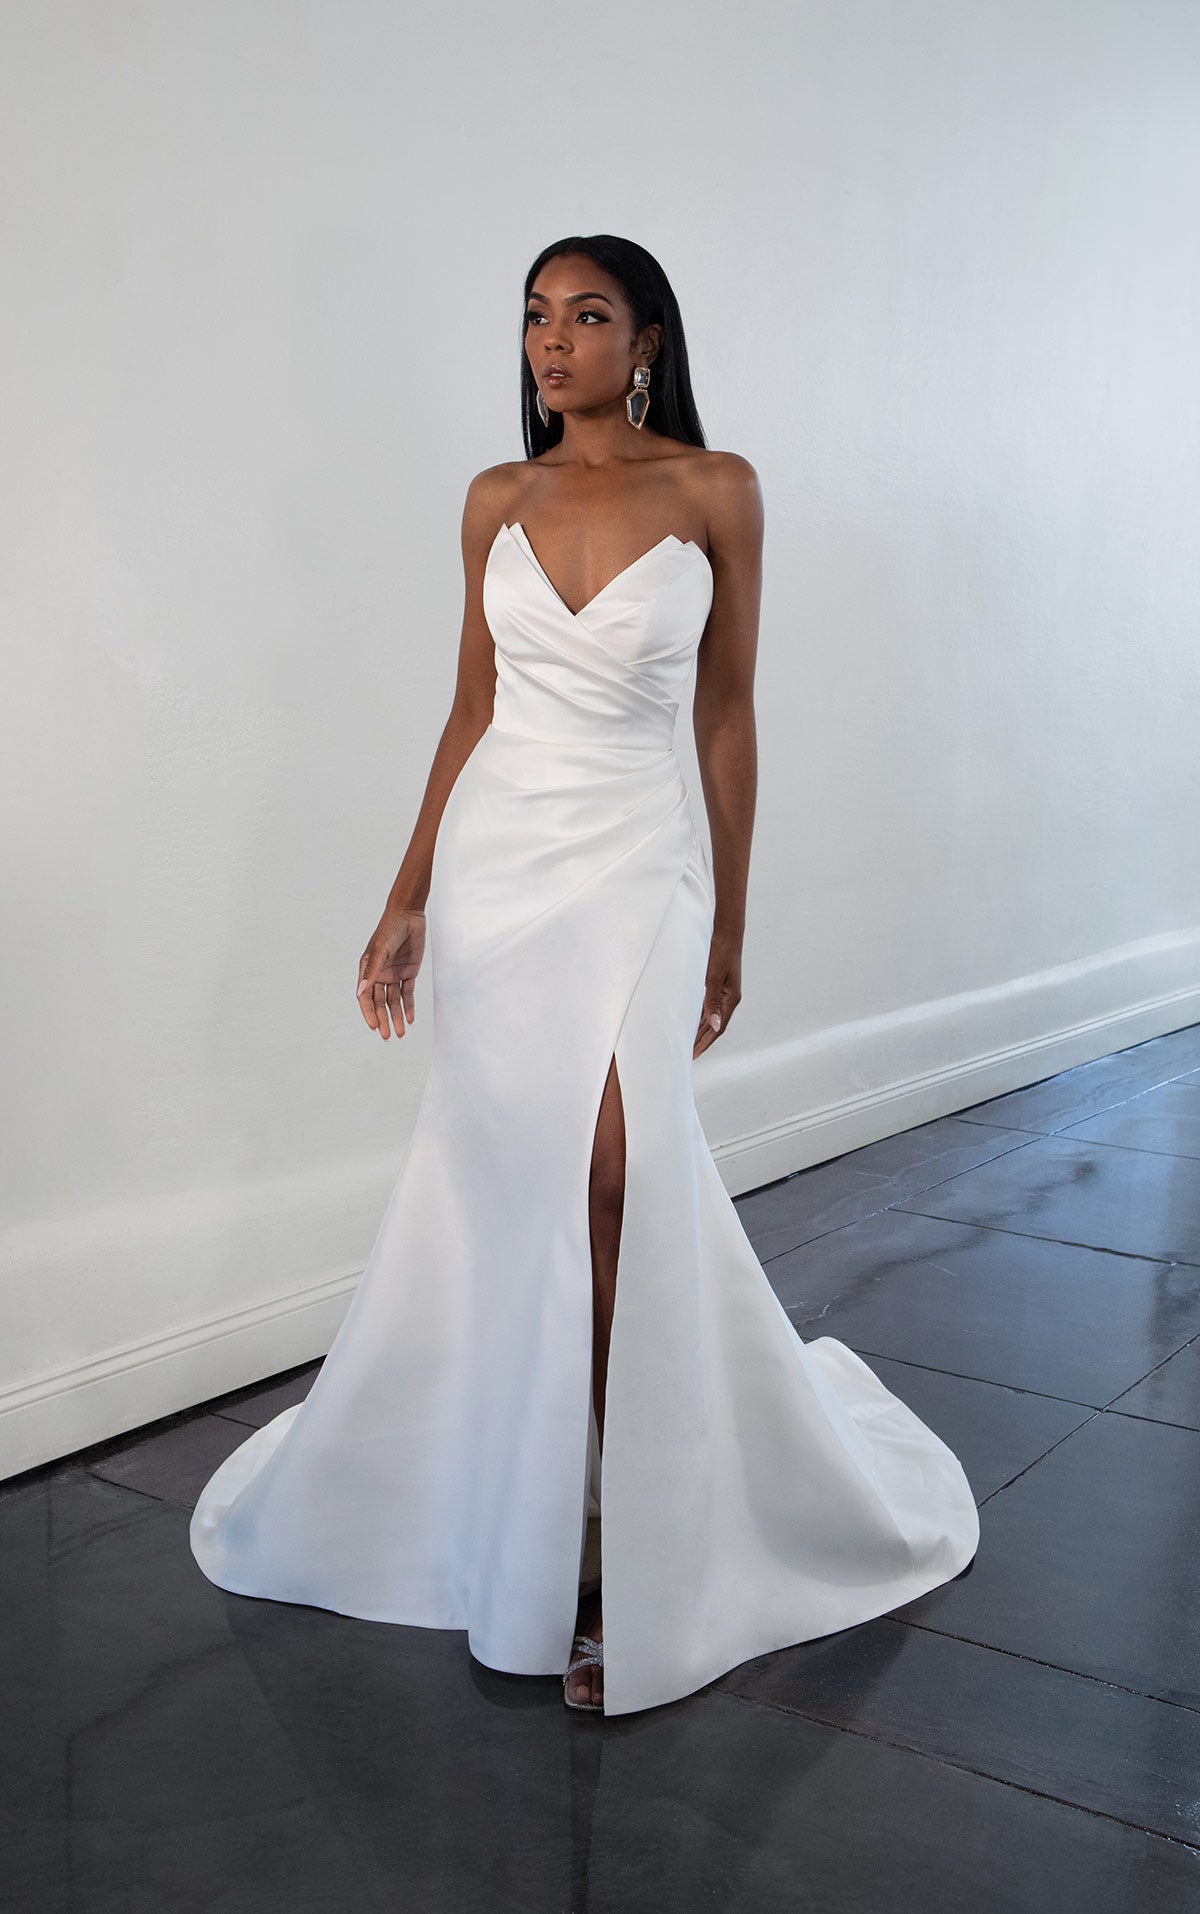 White Detachable Tulle Overskirt Detachable Skirt Bridal Overlay